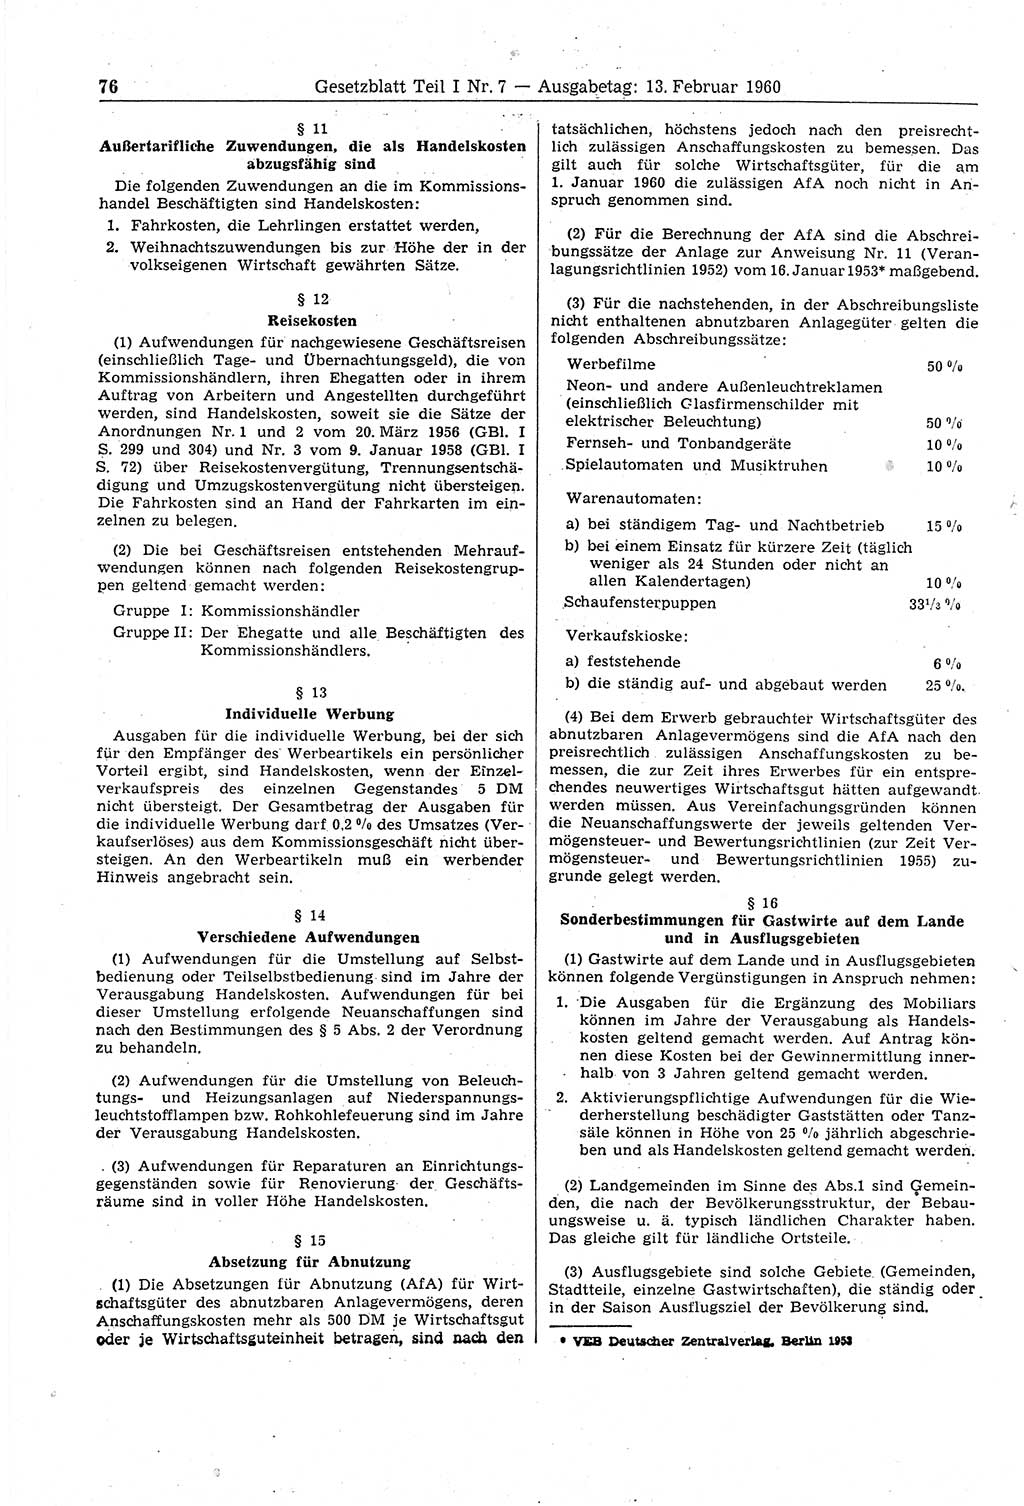 Gesetzblatt (GBl.) der Deutschen Demokratischen Republik (DDR) Teil Ⅰ 1960, Seite 76 (GBl. DDR Ⅰ 1960, S. 76)